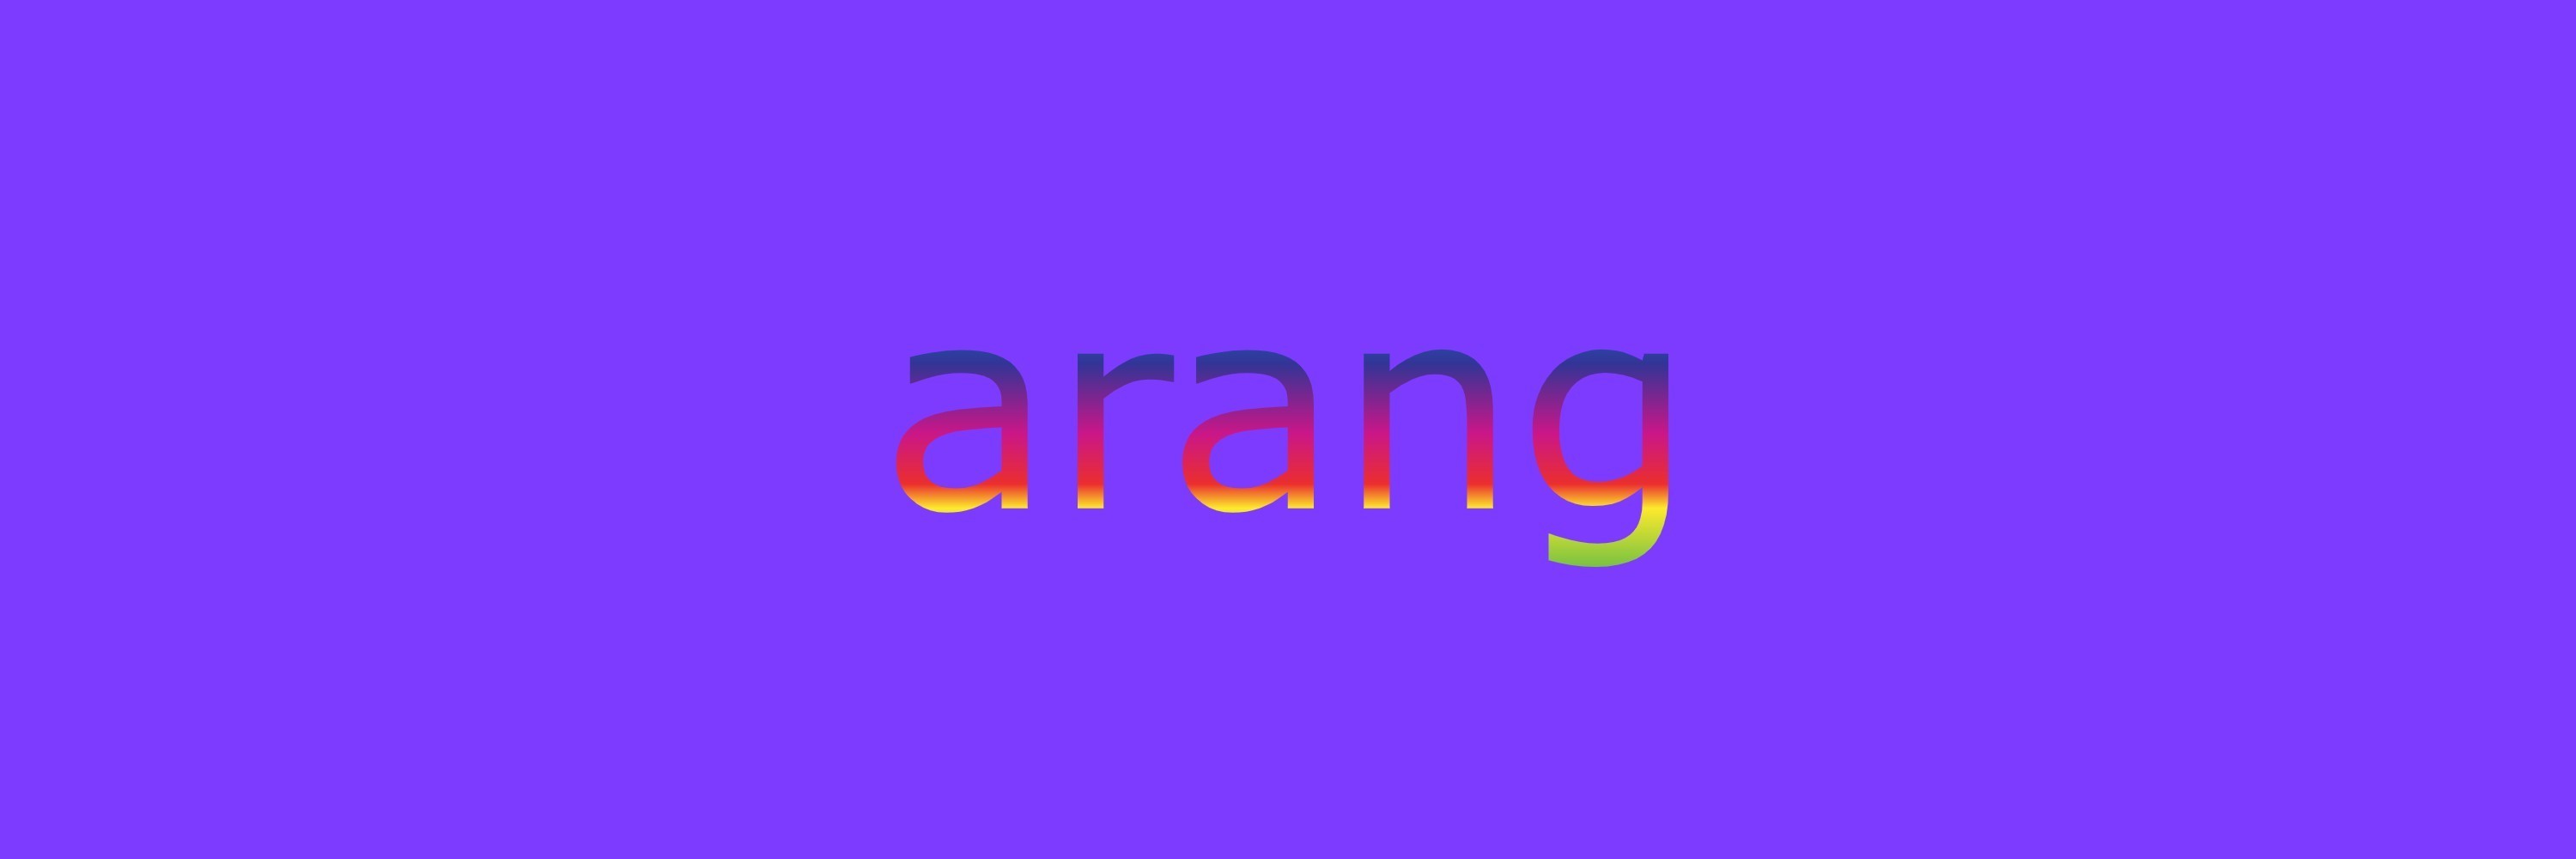 arang2709